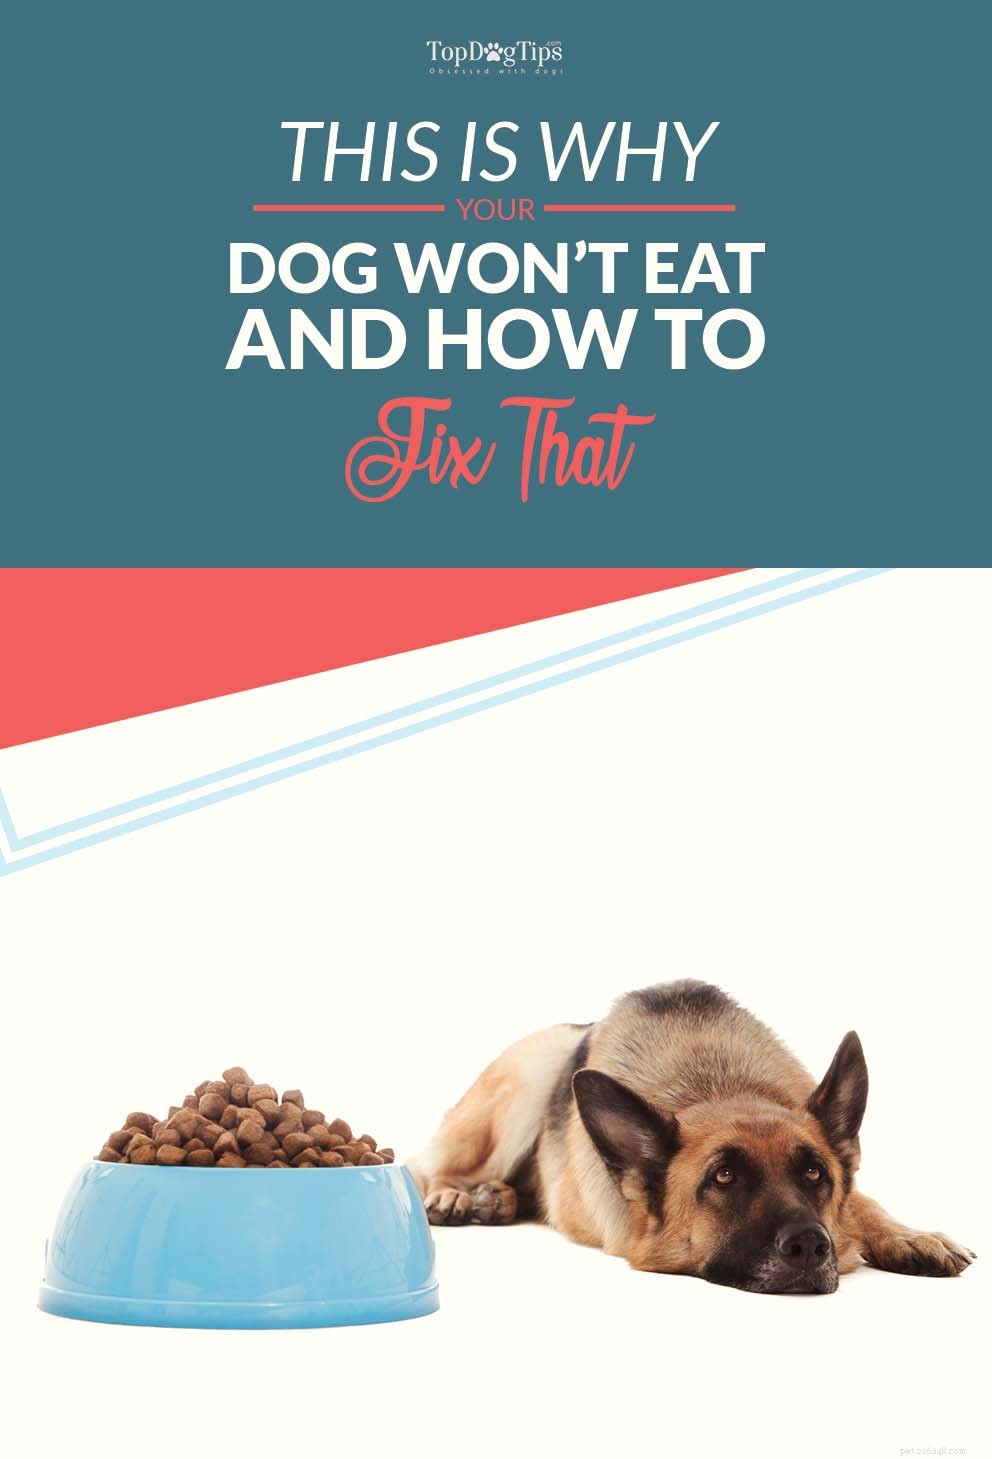 Perché il mio cane non mangia? Ecco perché i cani possono rifiutare il cibo